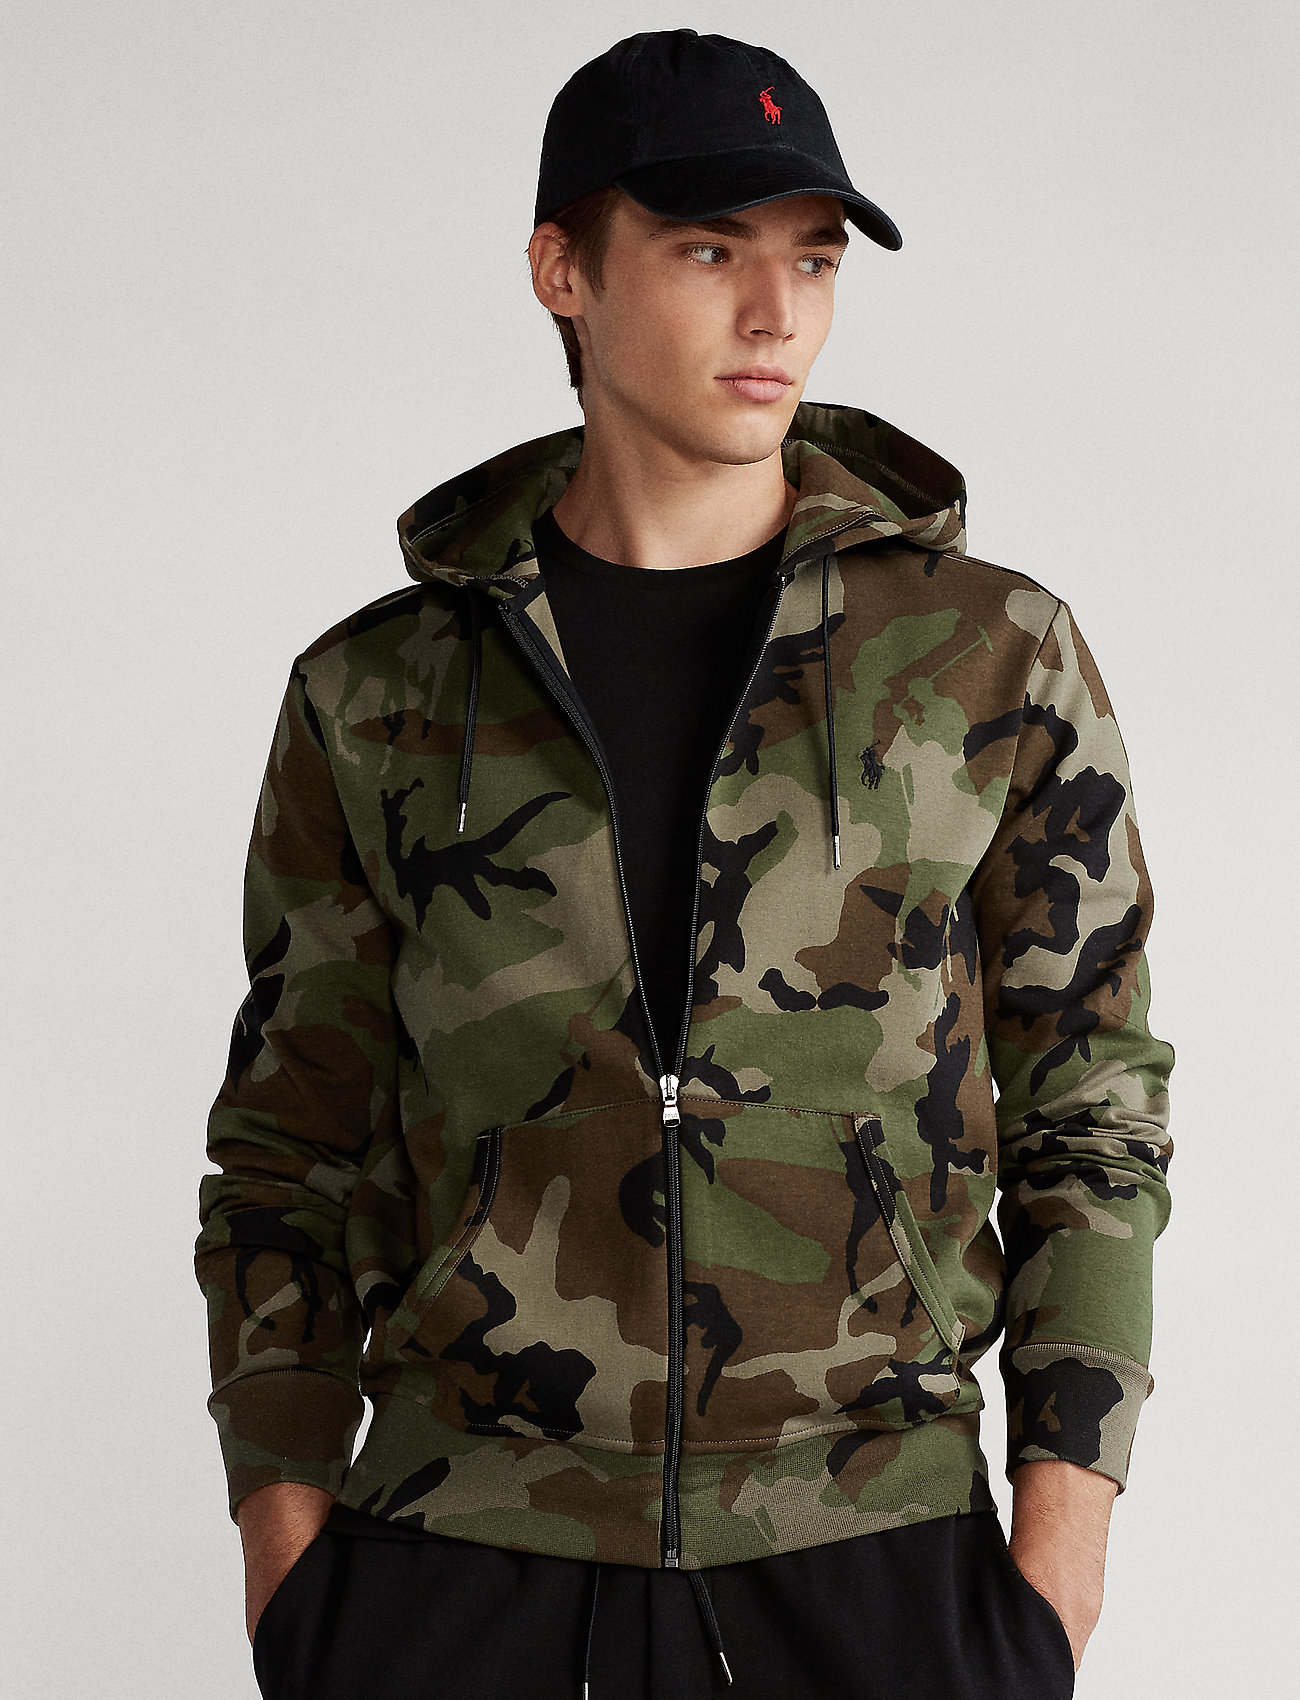 ralph lauren camouflage hoodie